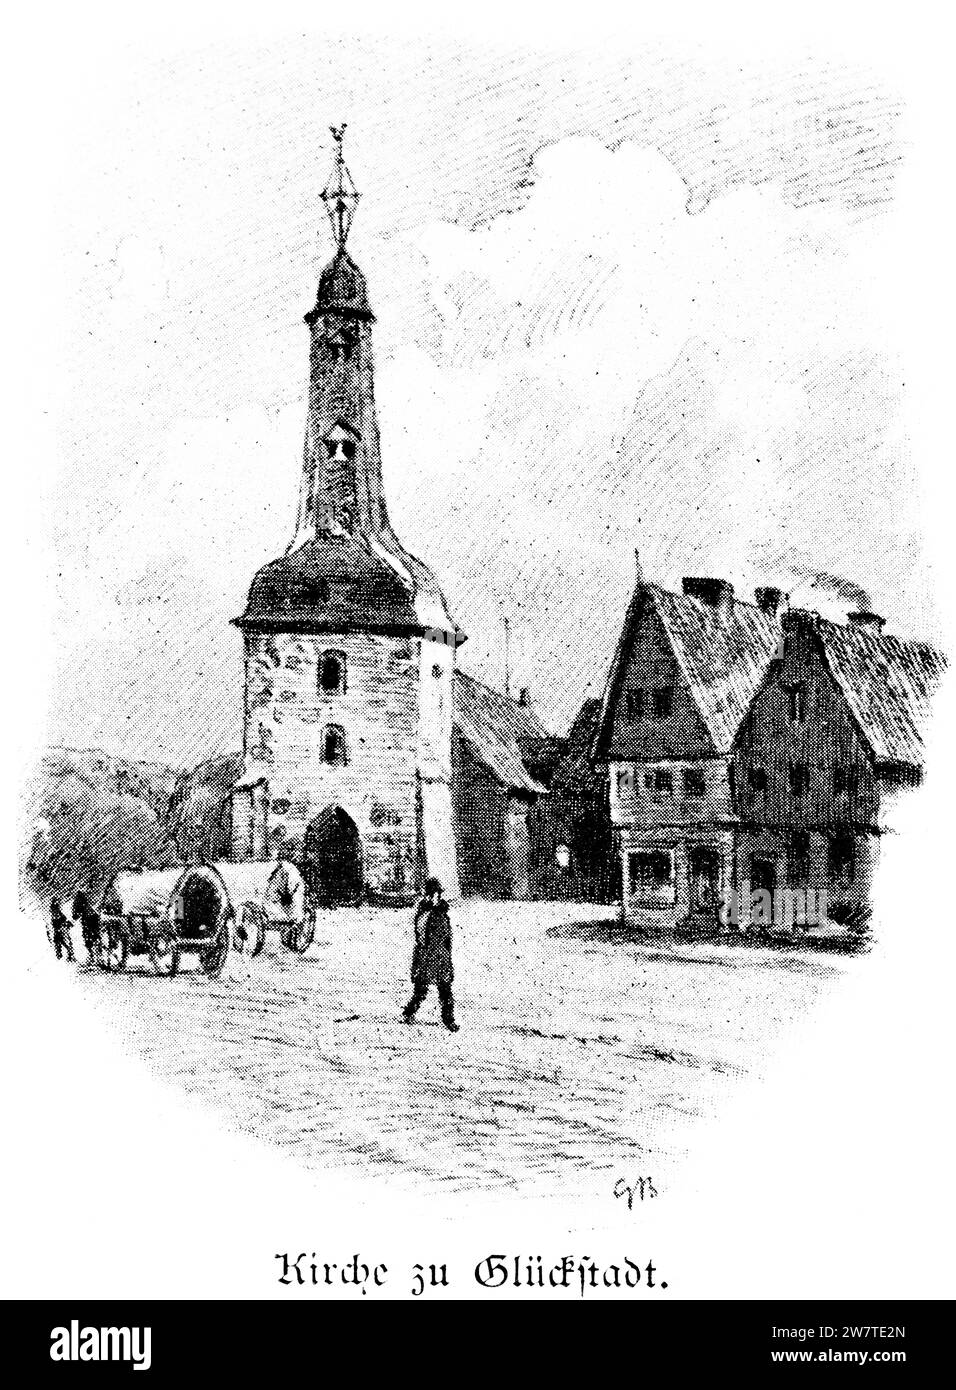 Kirche auf dem Marktplatz von Glückstadt, Schleswig-Holstein, Norddeutschland, Mitteleuropa, histrorische Abbildung 1896 Stockfoto